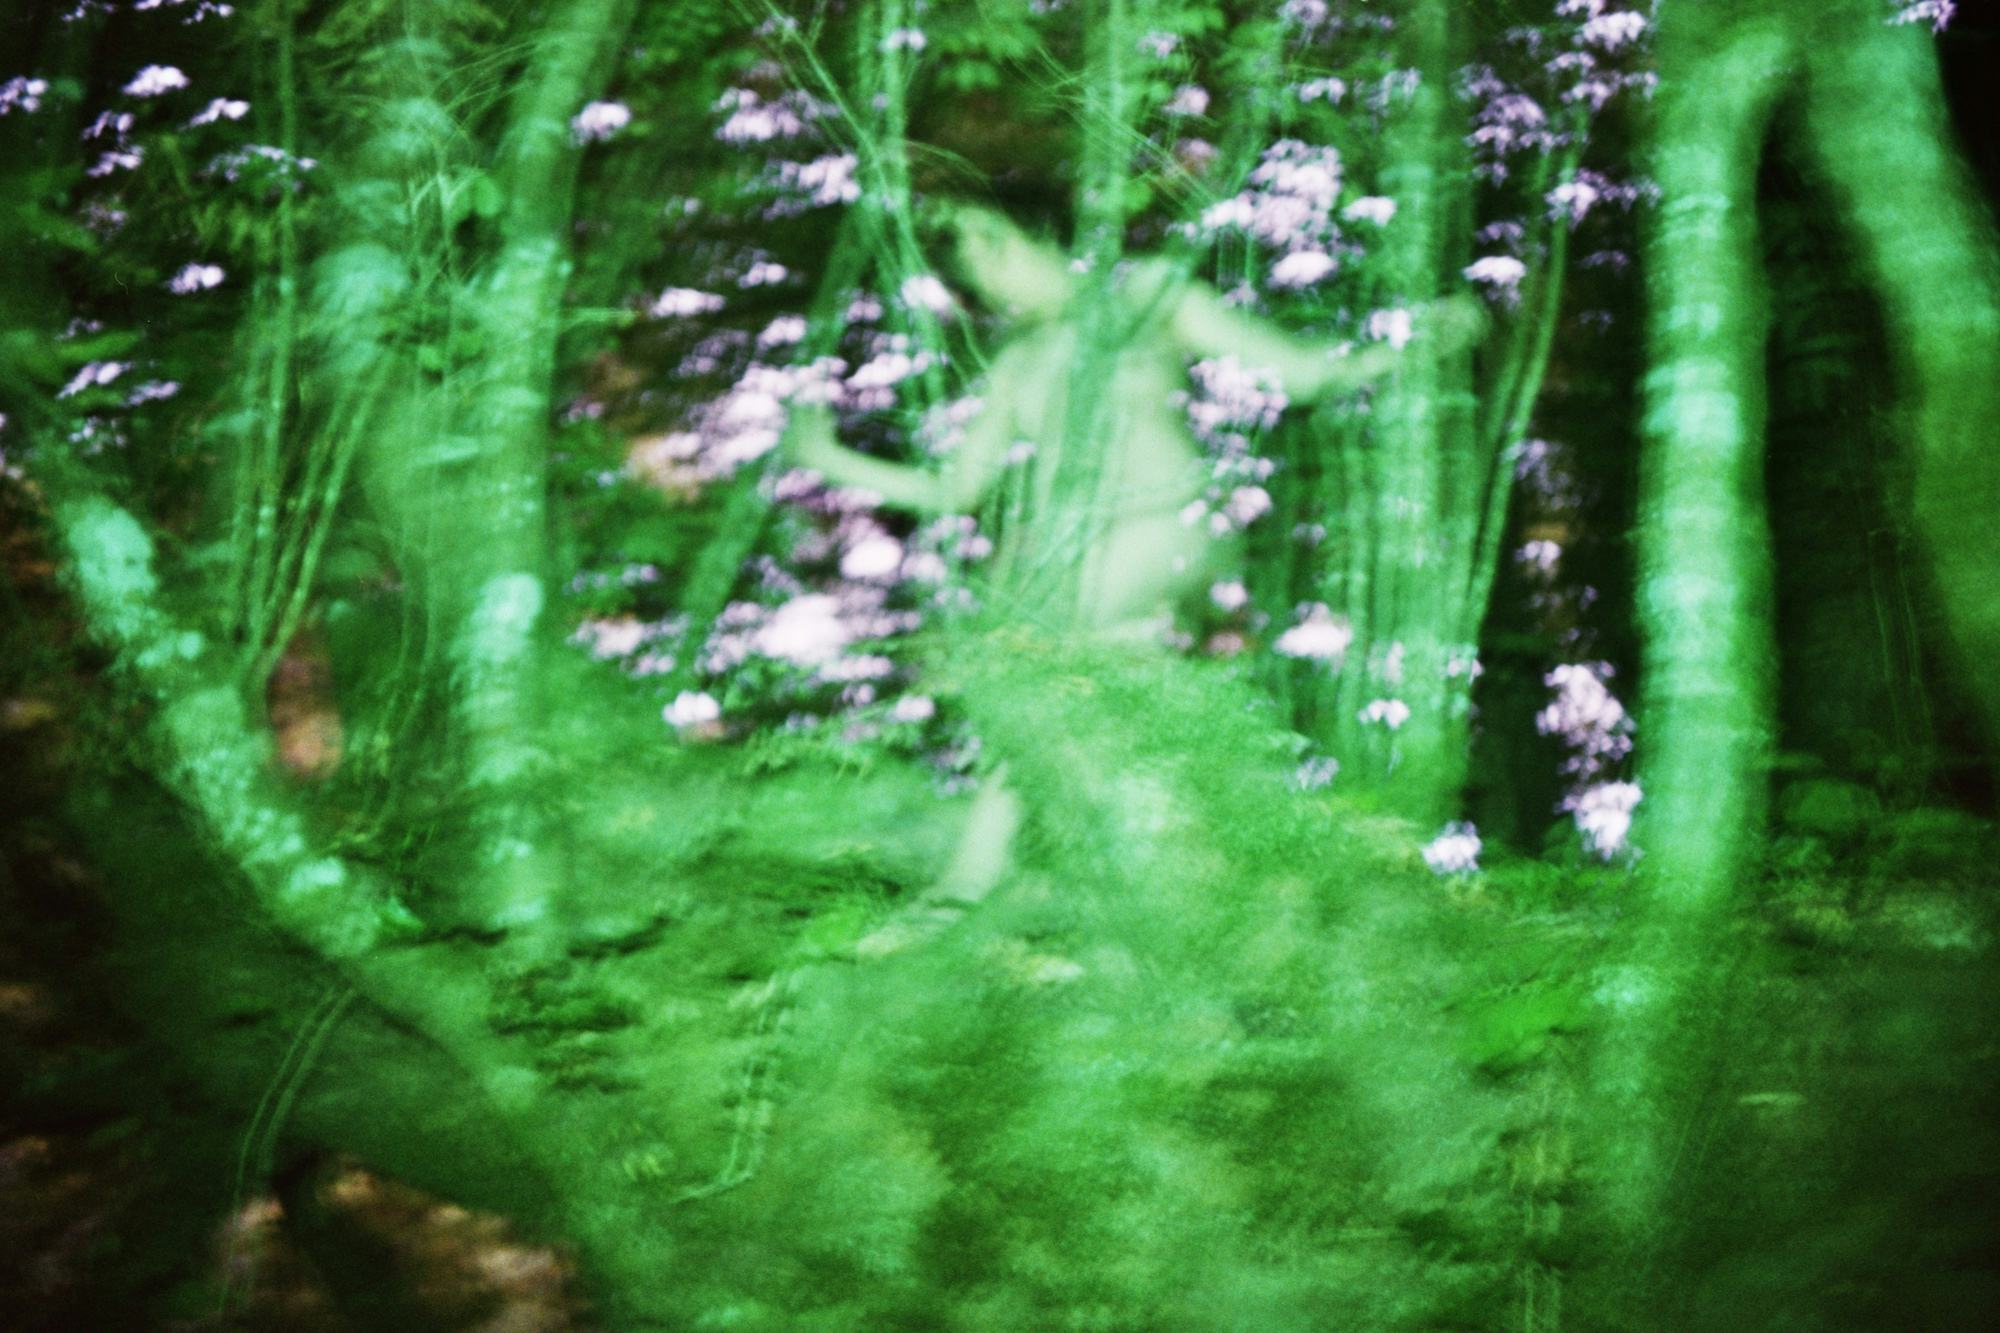 Blurry image of a green figure walking in between green shrubbery © Cansu Yıldıran